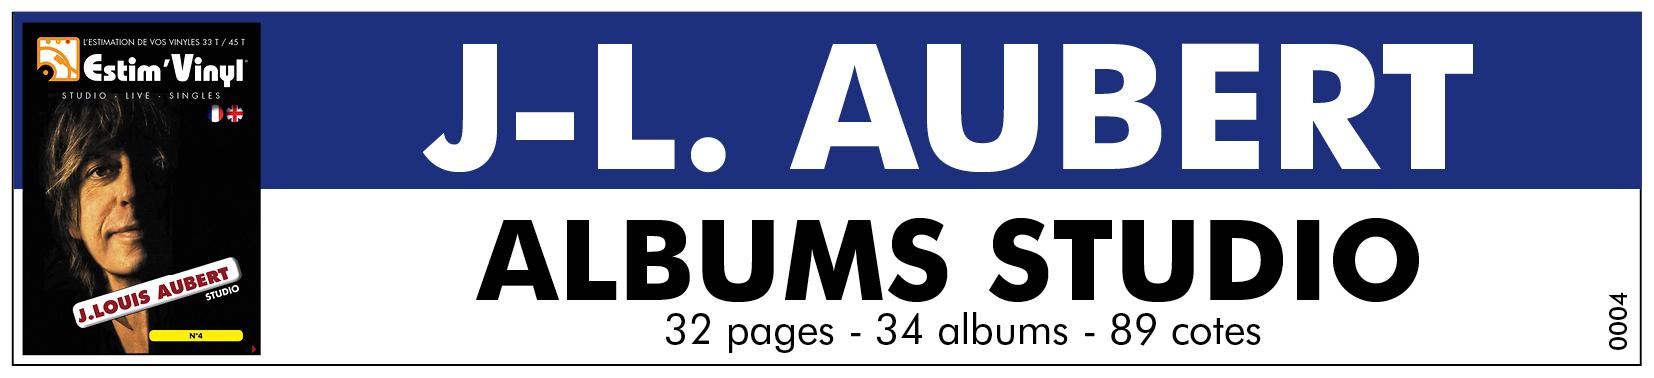 Retrouvez la discographie cotée des albums studio de Jean Louis Aubert, www.estimvinyl.com